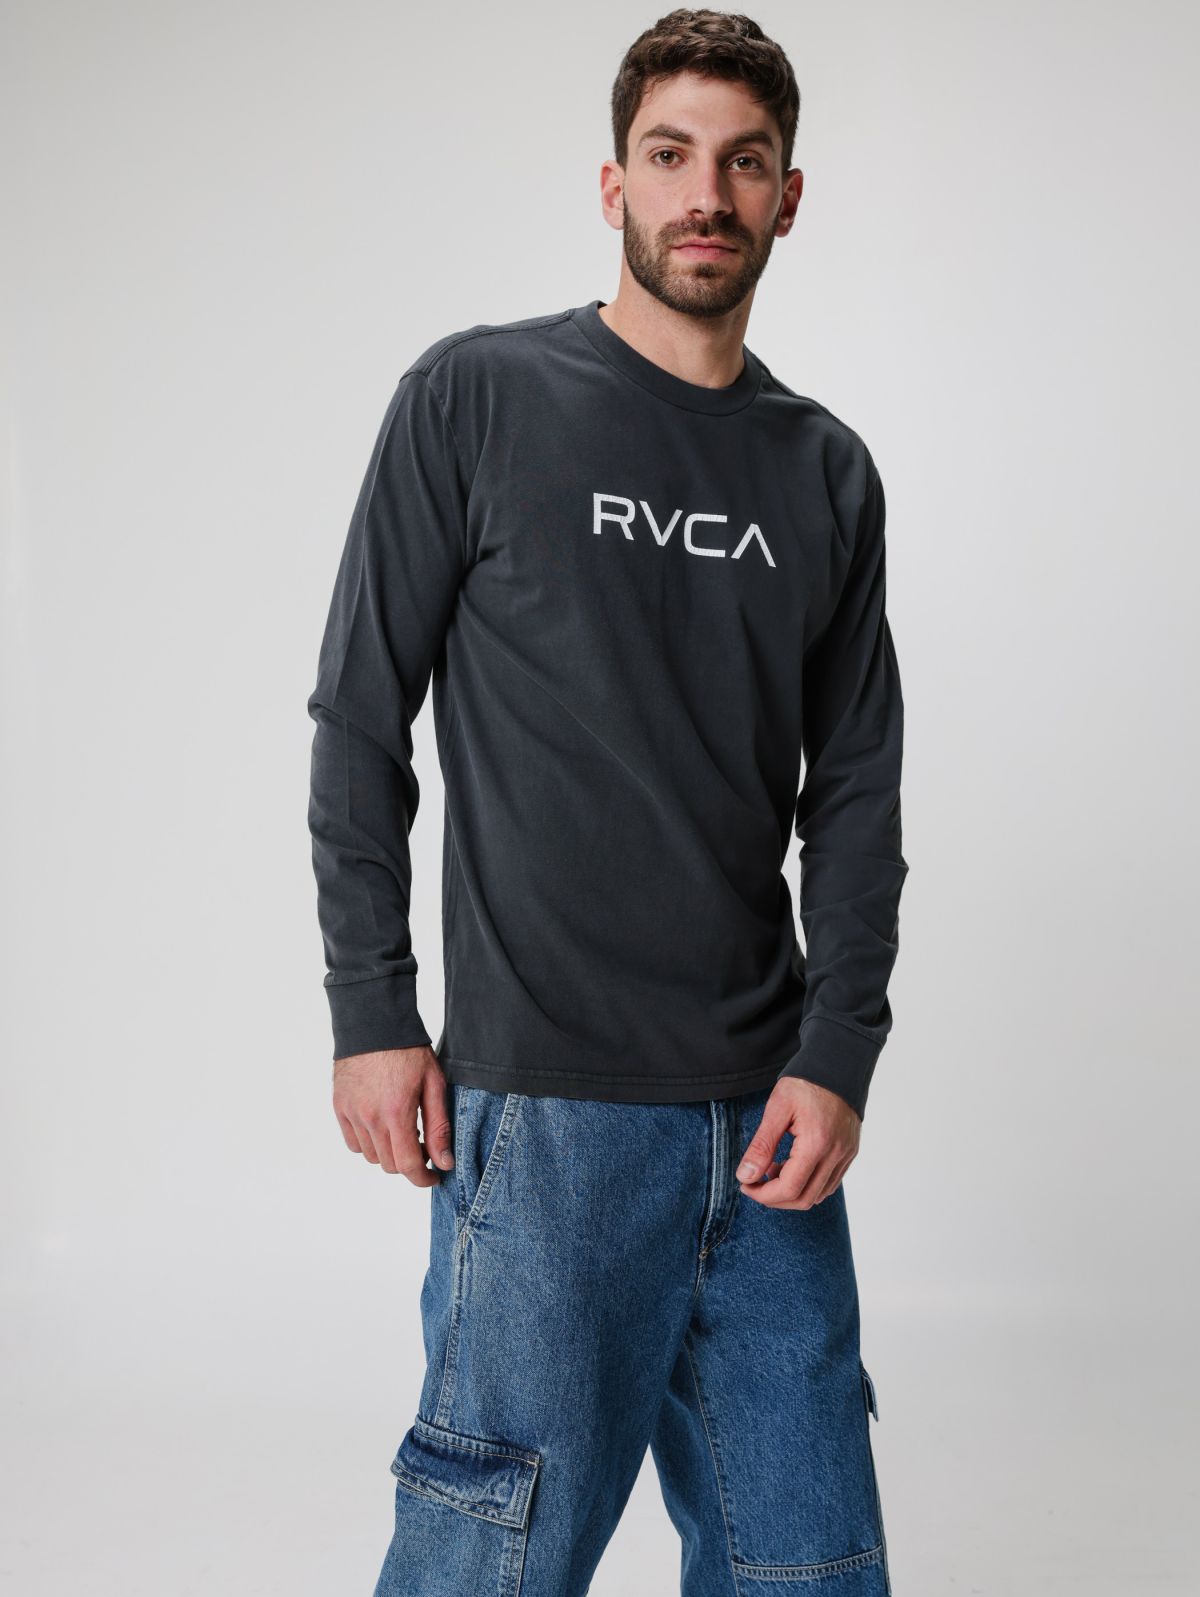  טישרט עם הדפס  לוגו של RVCA